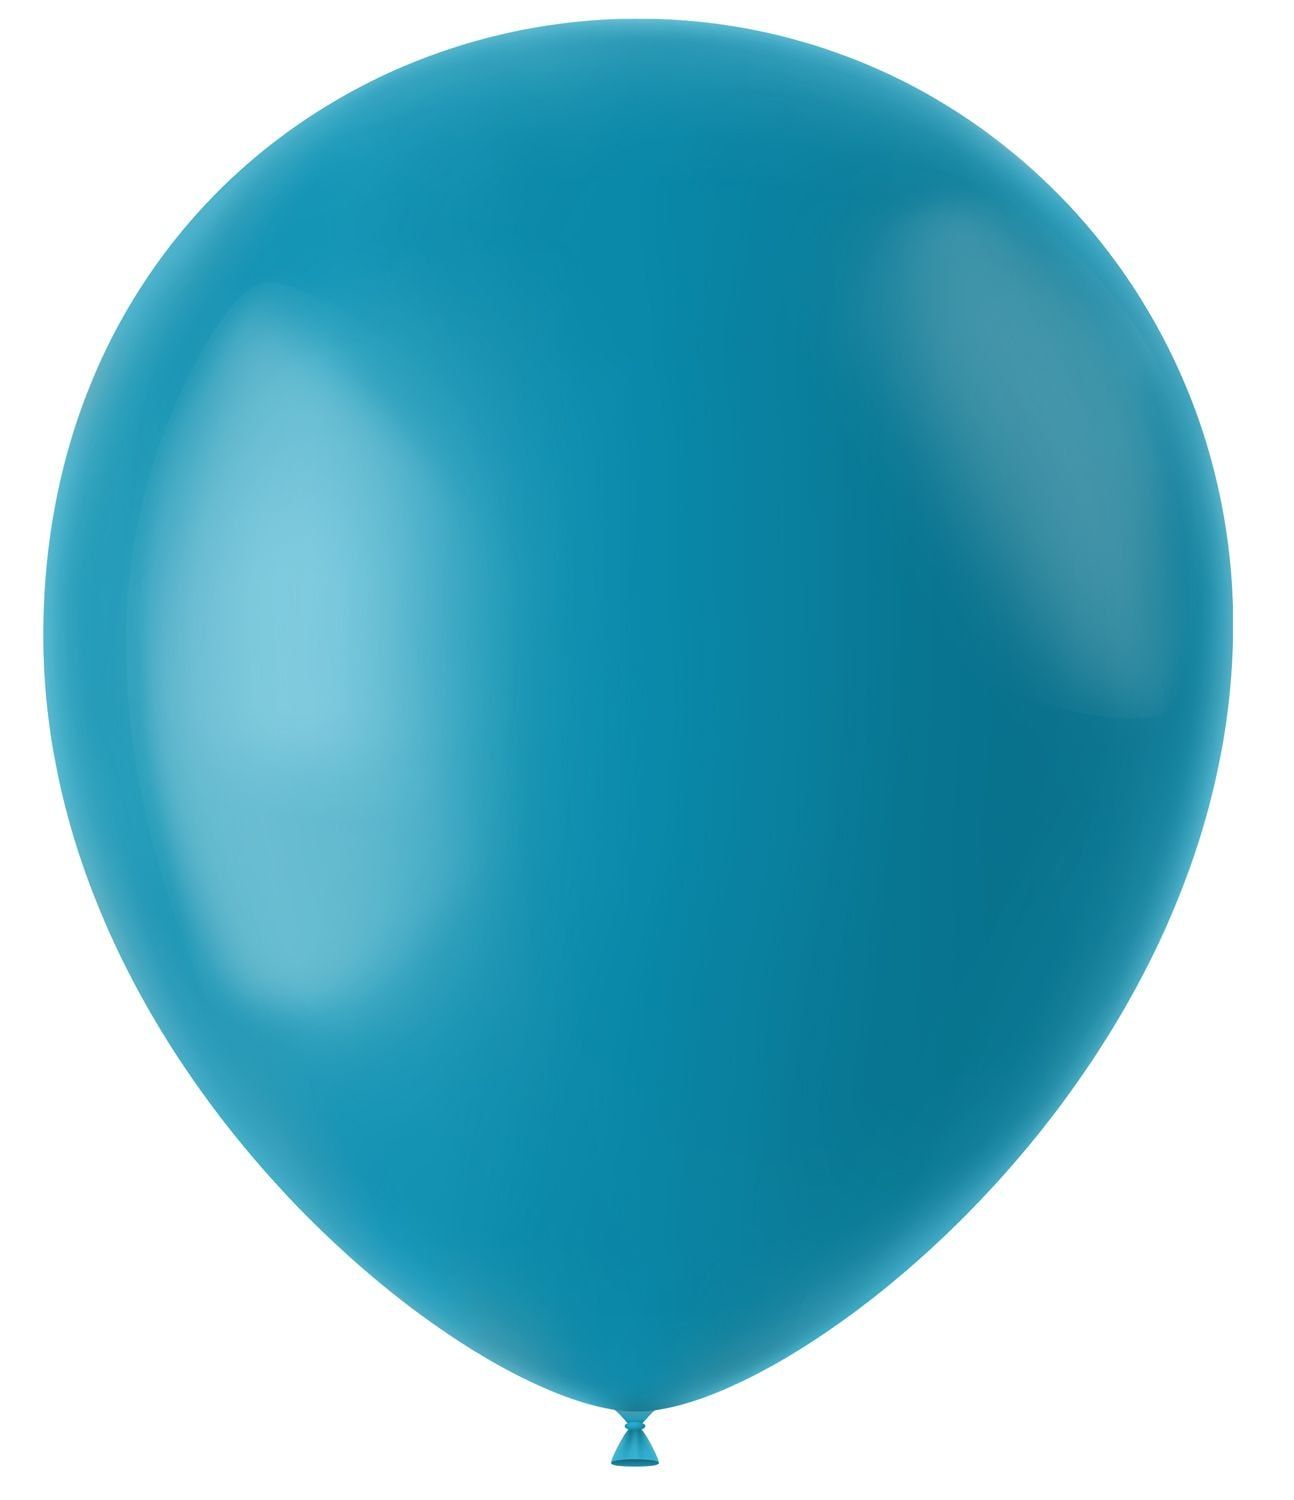 Ballonnen turquoise mat 10 stuks